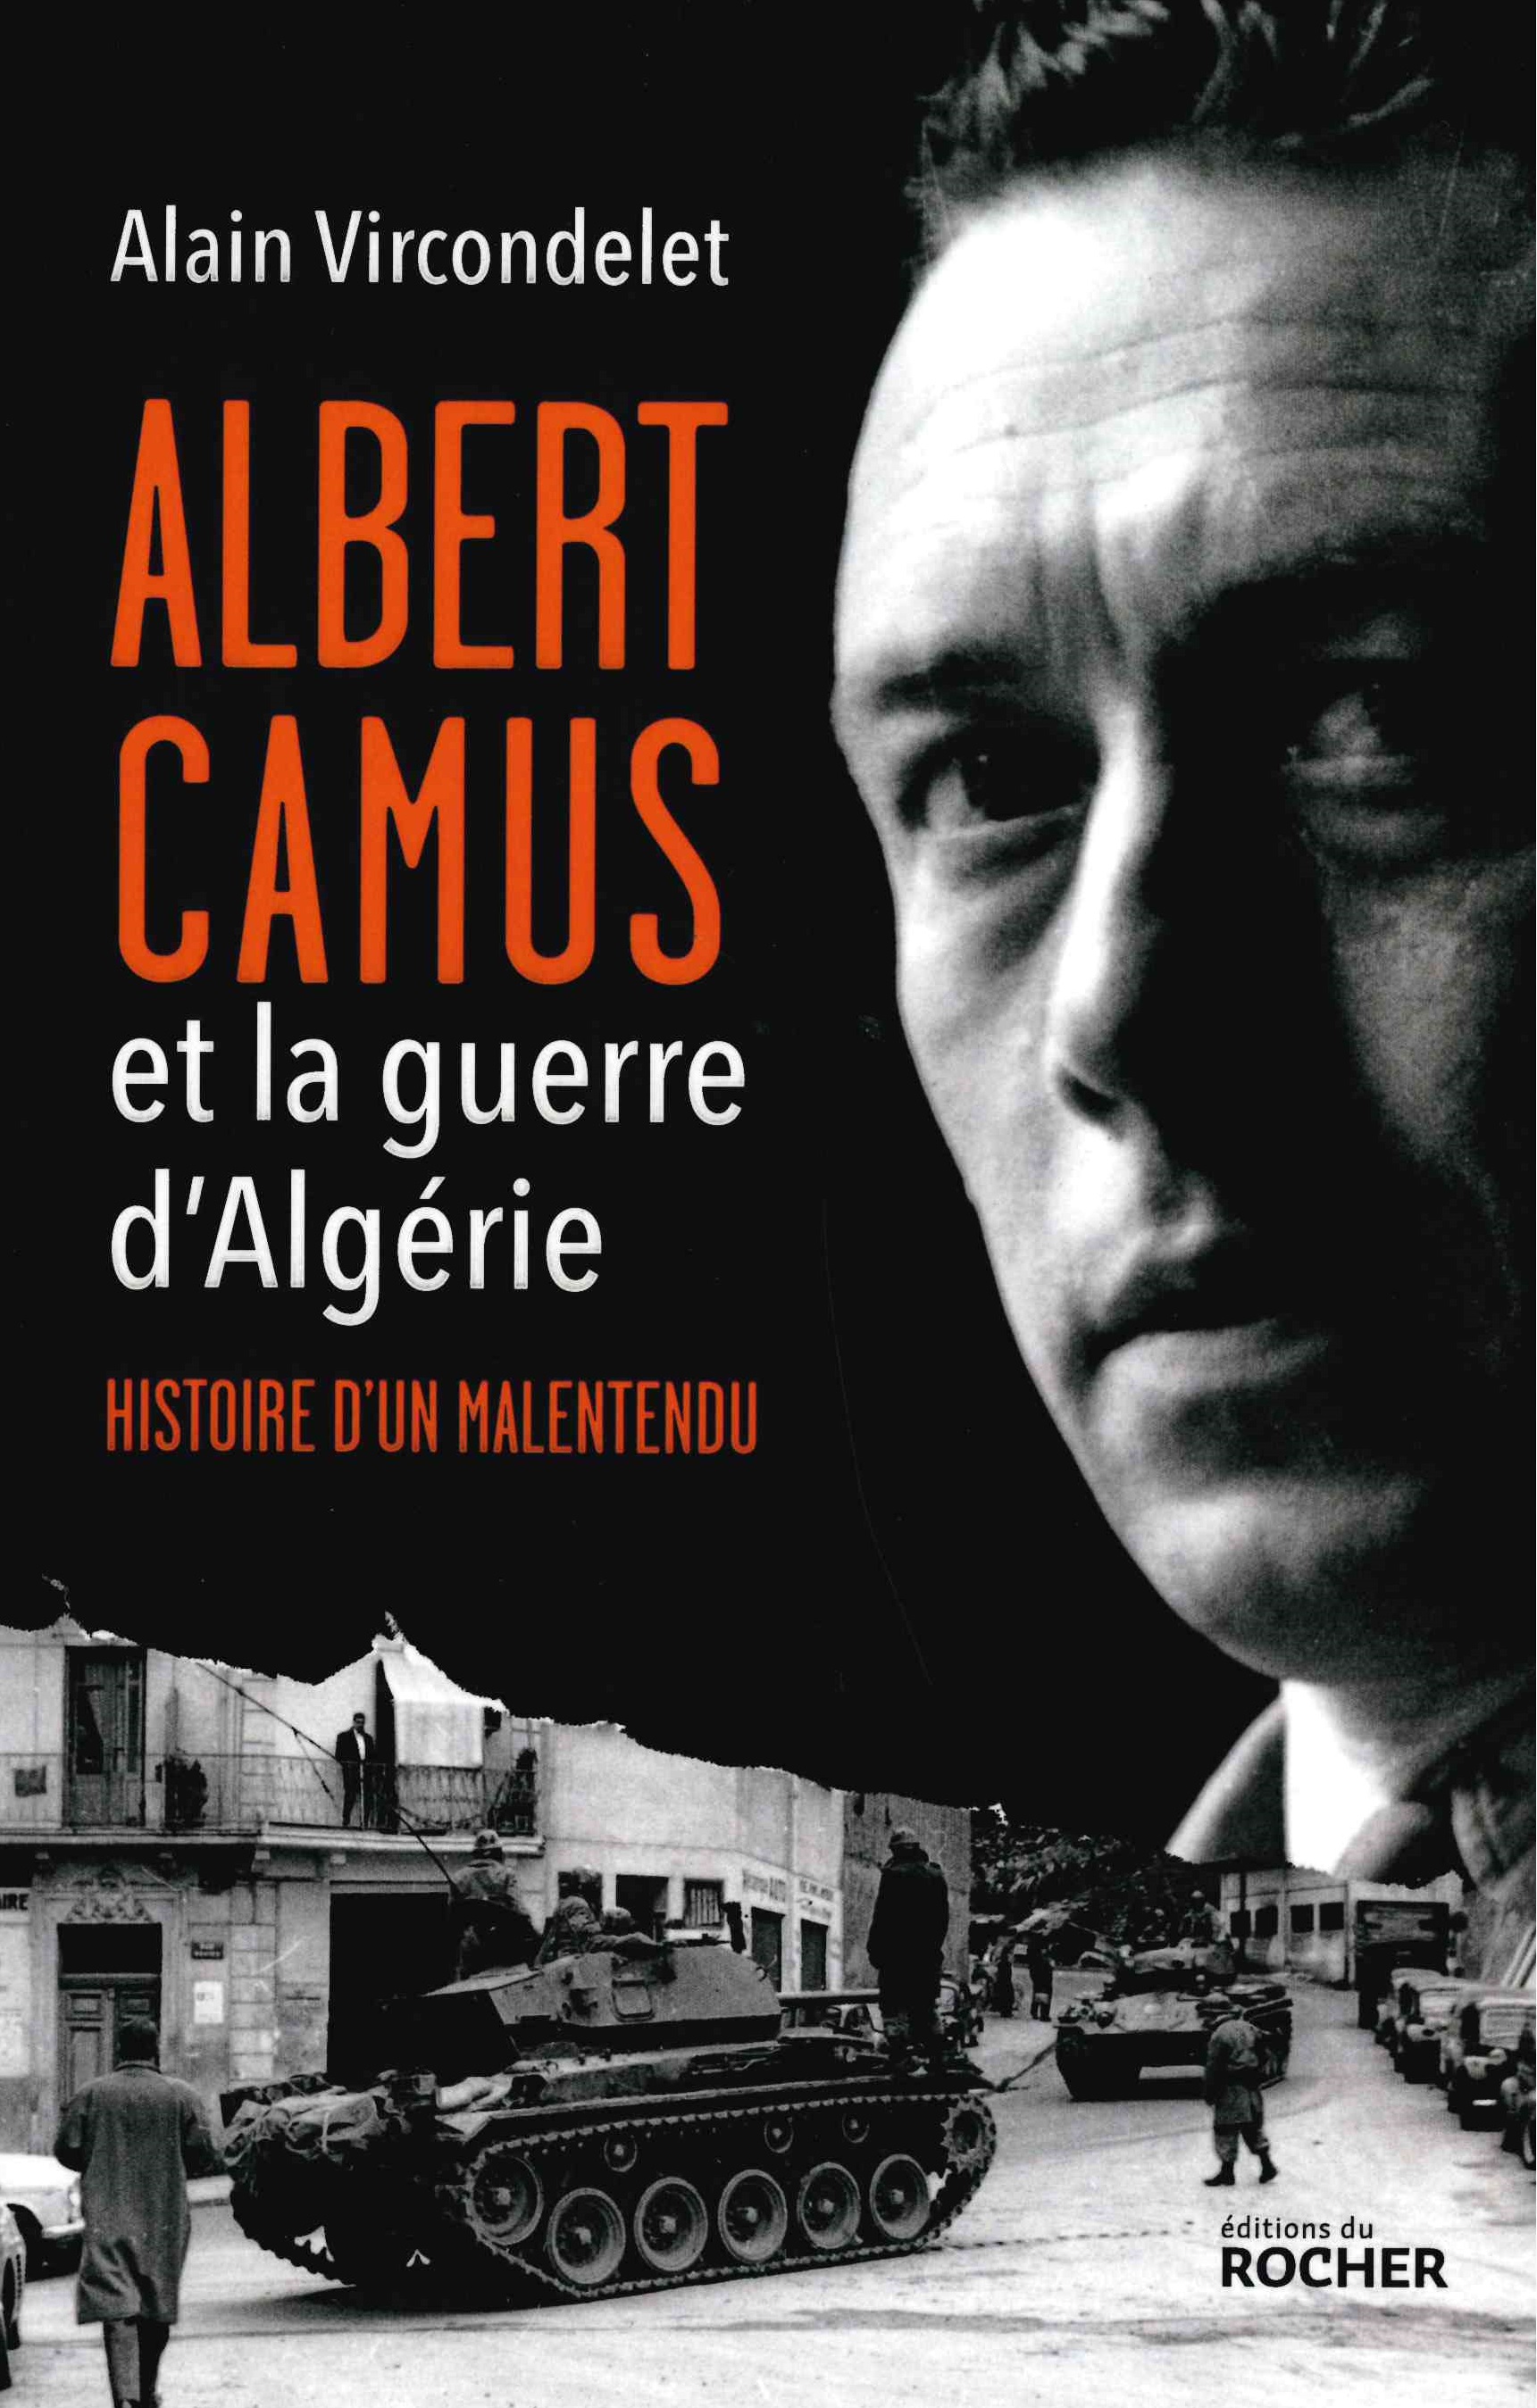 Vircondelet (Alain), Albert Camus et la guerre d’Algérie. Histoire d’un malentendu